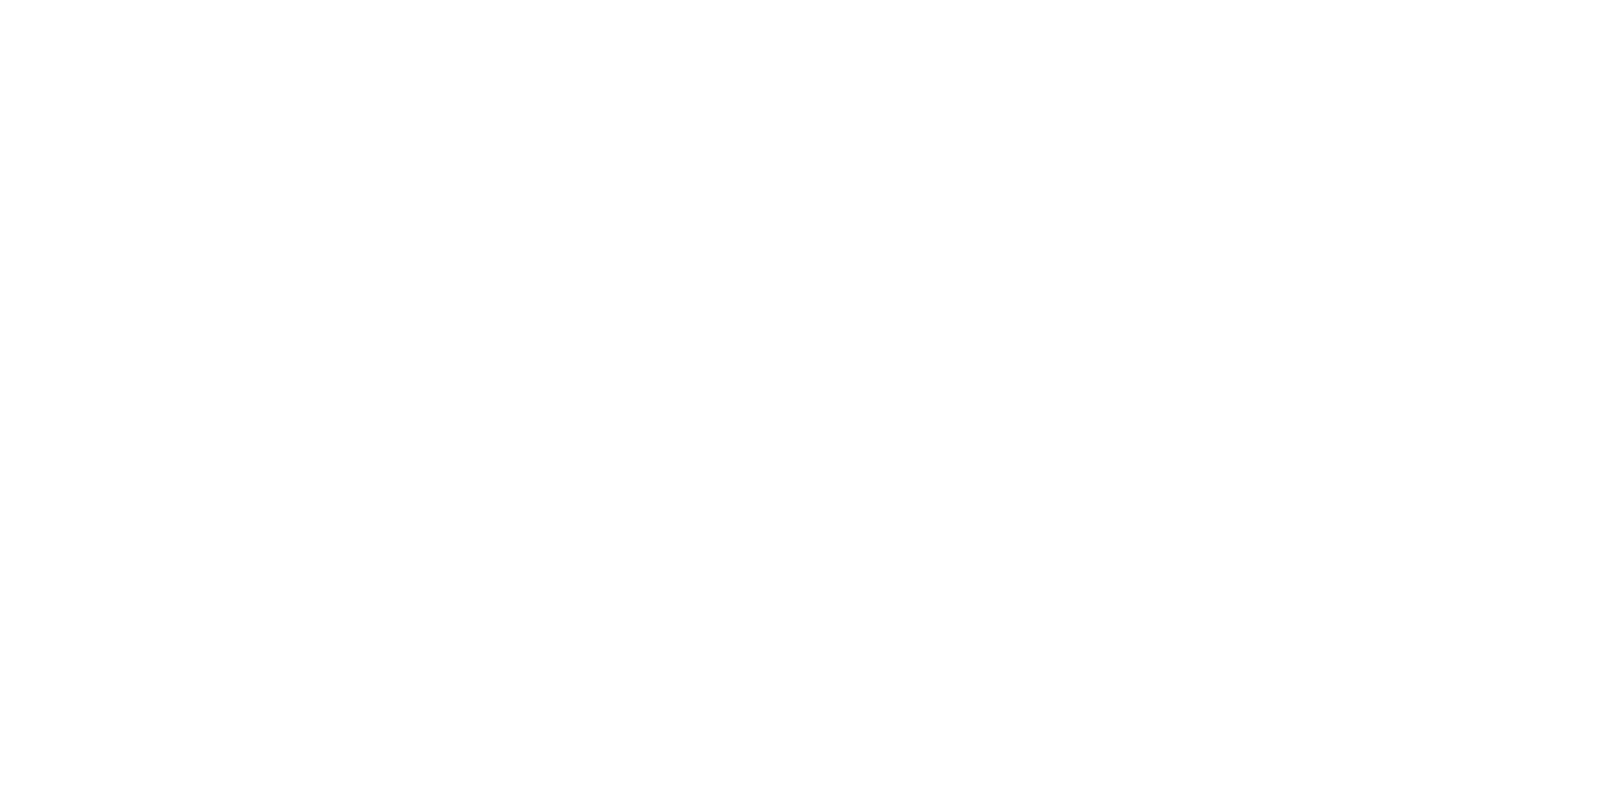 InfraWare